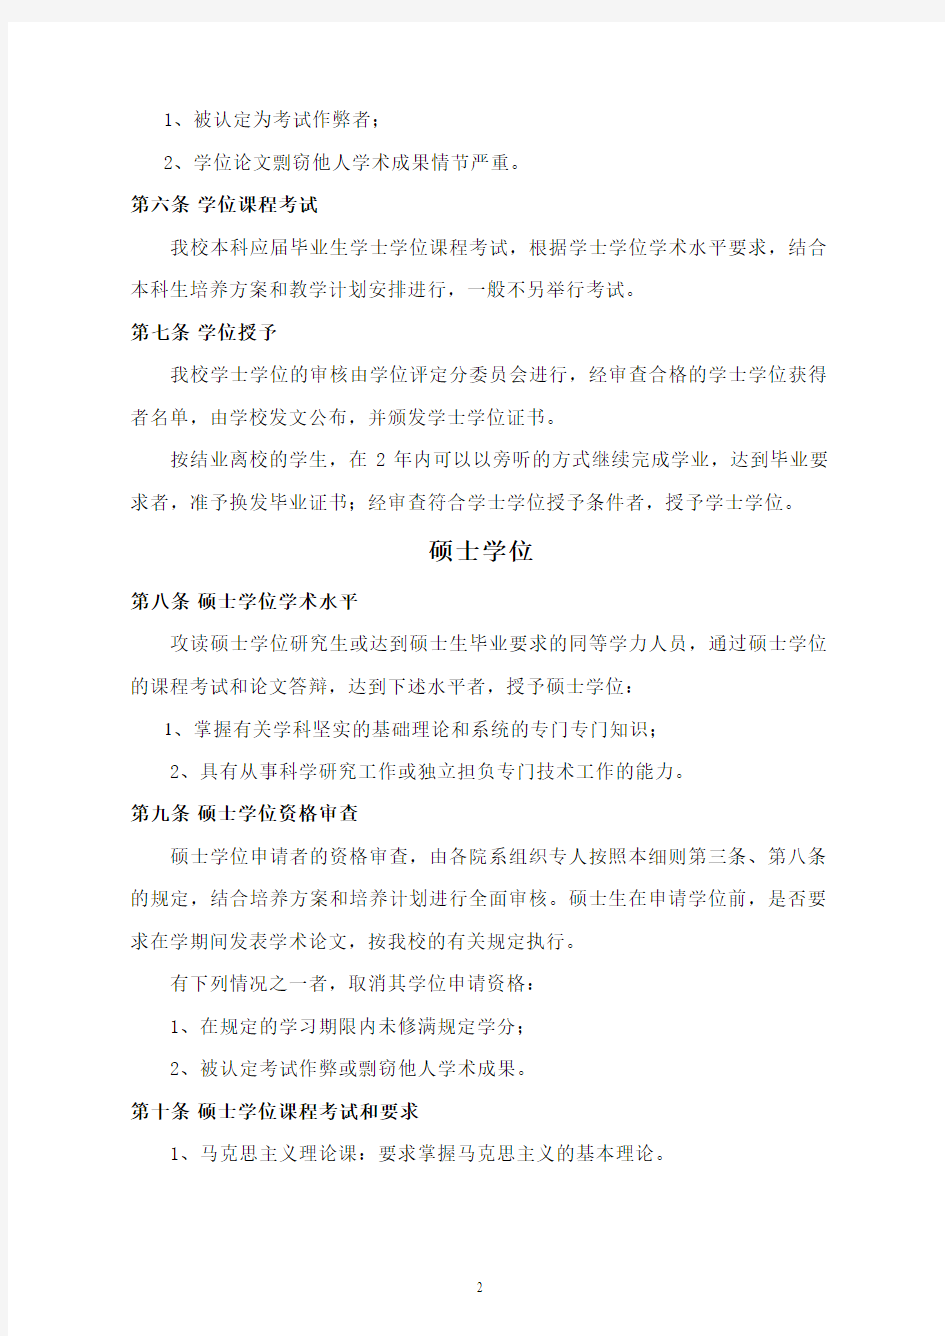 中国地质大学北京学位授予工作实施细则-康邦内容管理系统